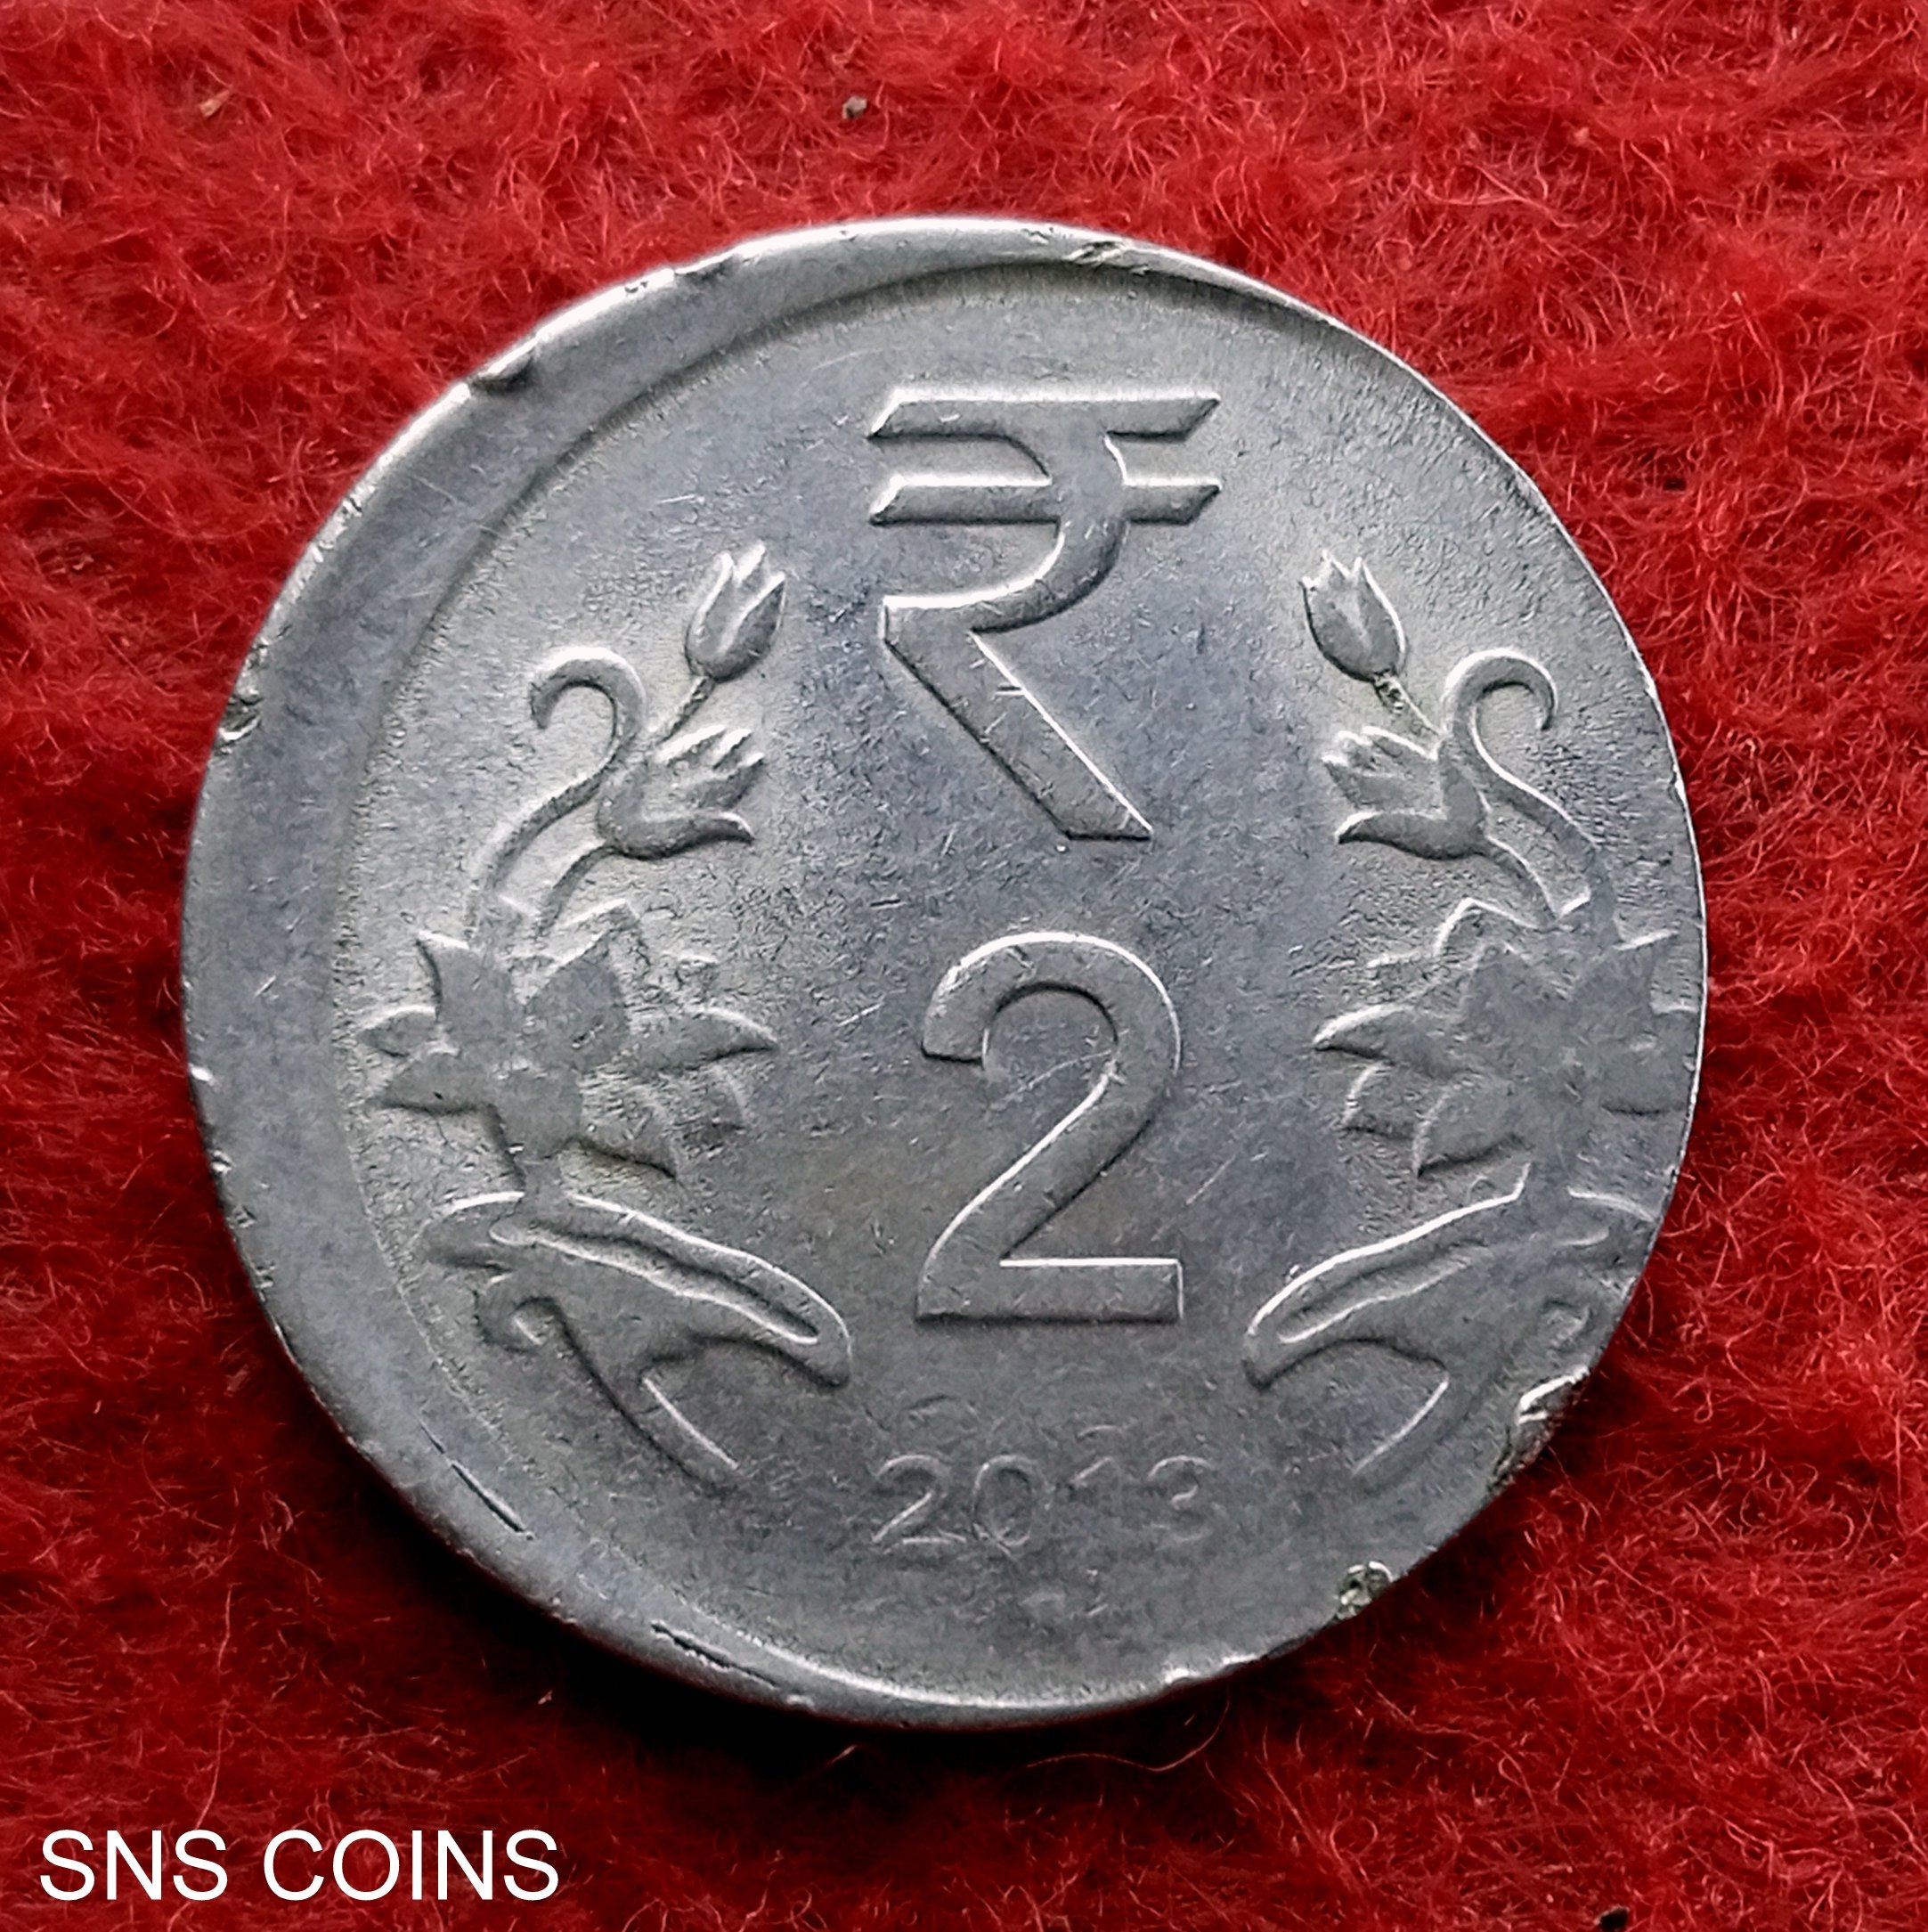 Đồng 2 rupi là một loại tiền tệ rất có giá trị tại Ấn Độ. Tuy nhiên, một số giá trị này có thể bị ảnh hưởng bởi lỗi trục lệch đồng. Nhưng đừng lo lắng, hình ảnh đẹp của chúng tôi sẽ giúp bạn nhìn nhận một cách khác về đồng tiền này.